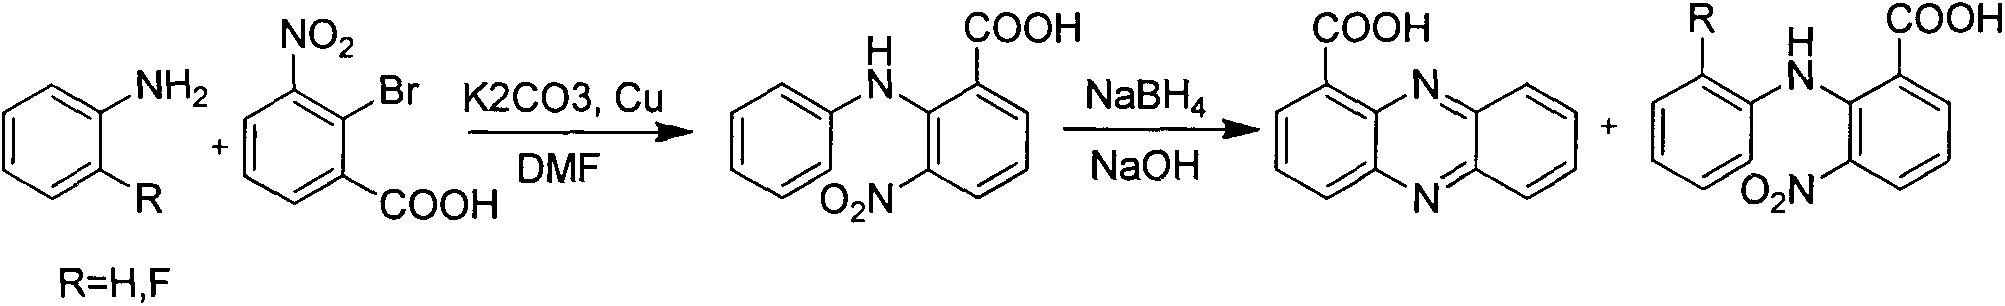 Method for synthesizing phenazine-1-carboxylic acid